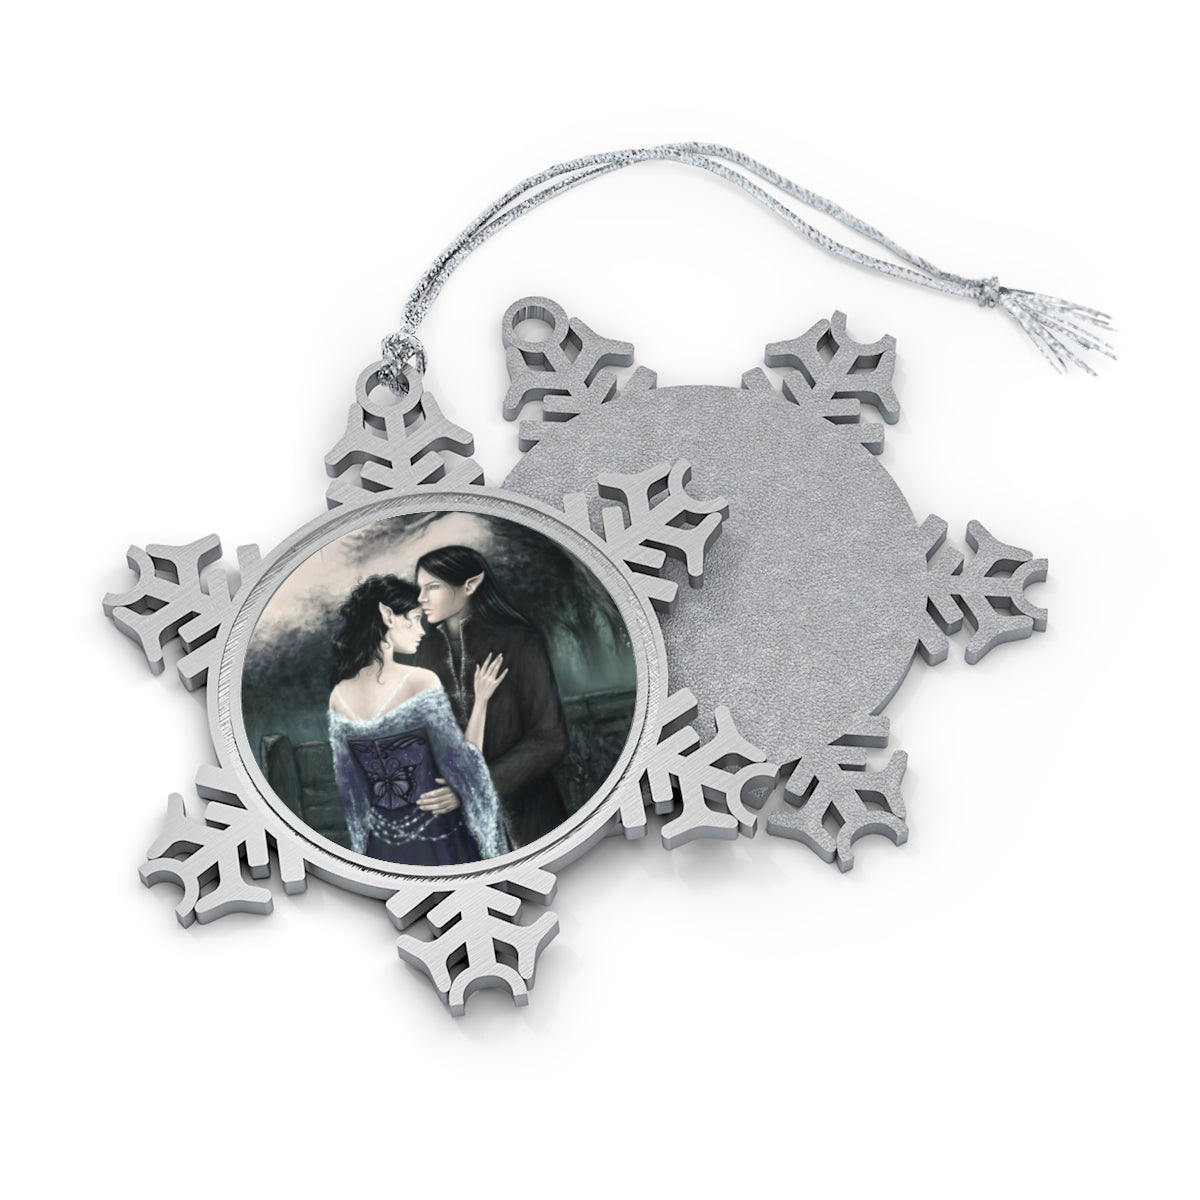 Snowflake Ornament - My Beloved